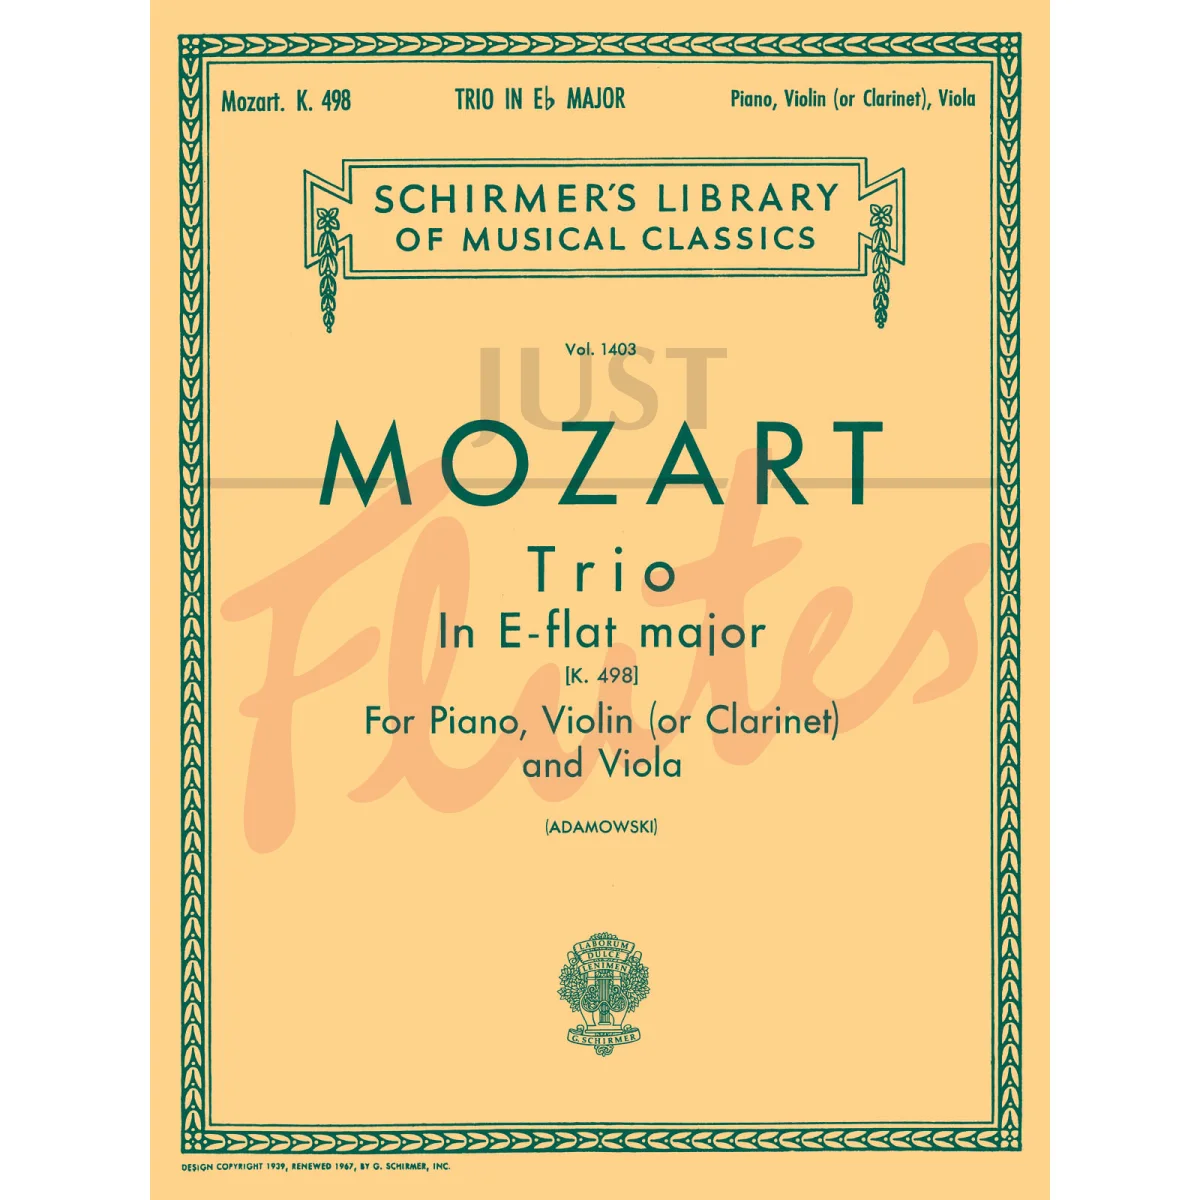 Trio No. 7 in E flat for Clarinet/Violin, Viola and Piano